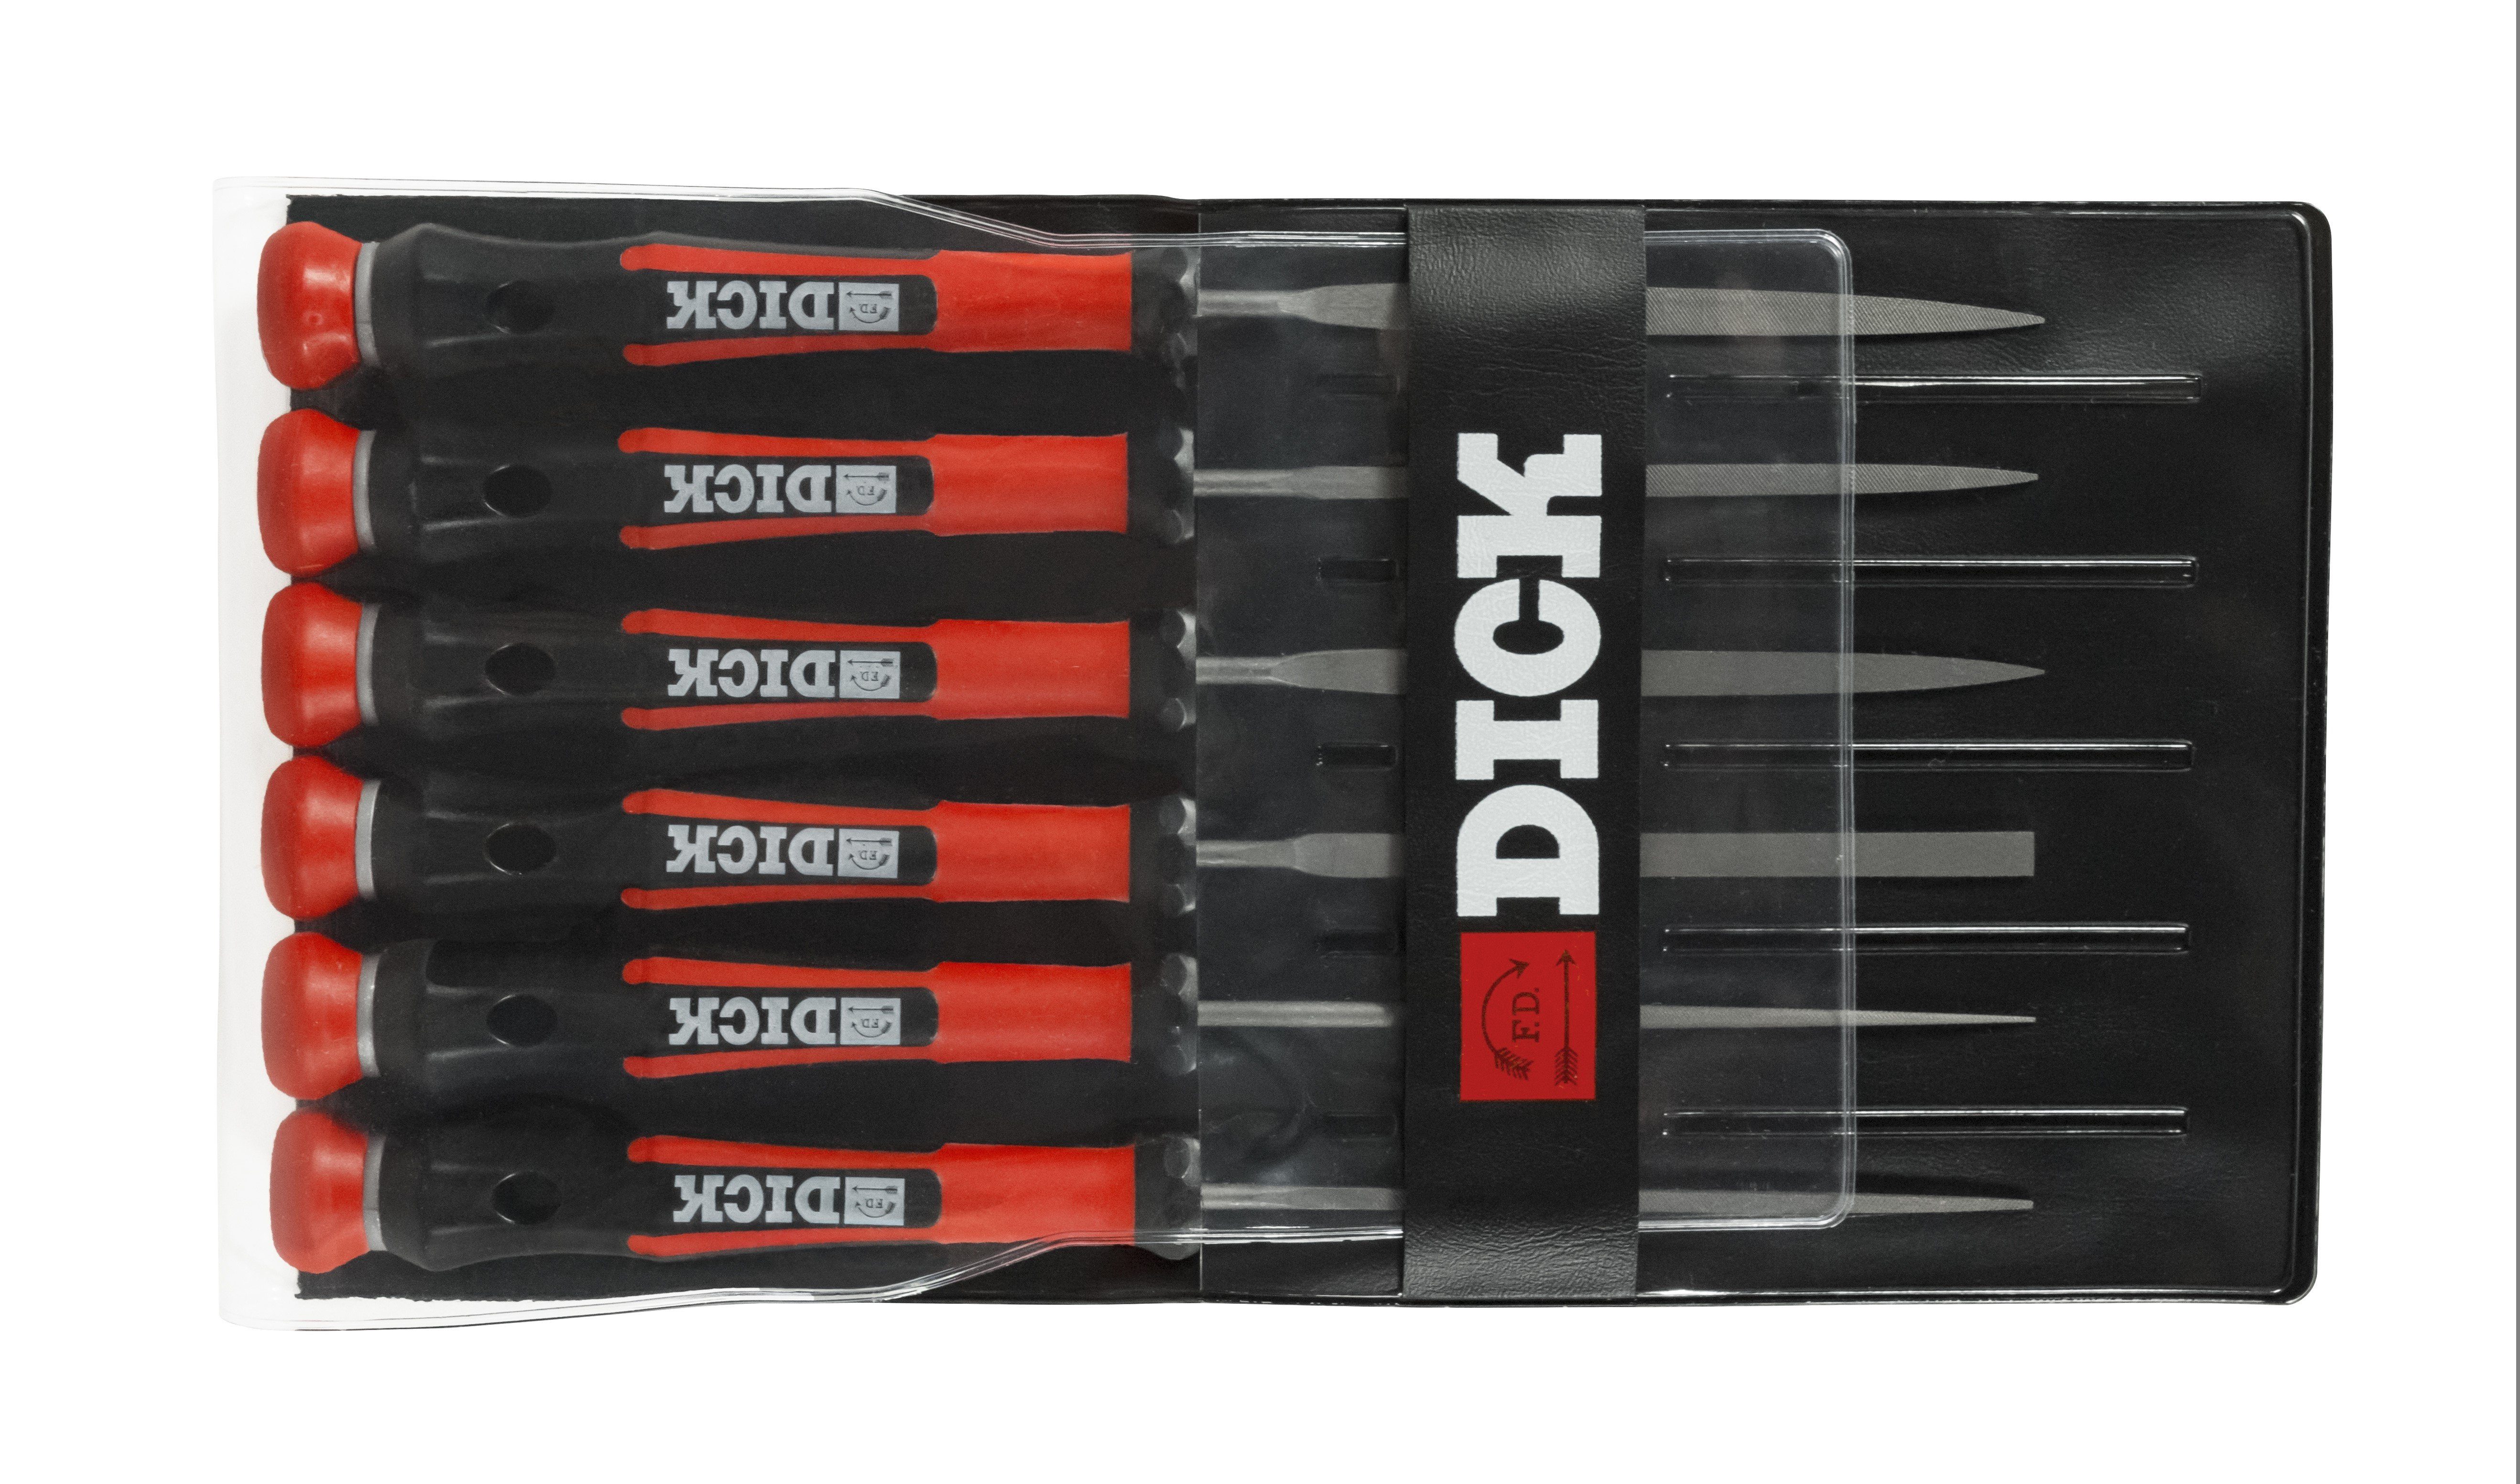 F. DICK Werkstattfeile Dick Nadelfeilensatz 6tlg 140mm für Handwek und Hobby für Stahl